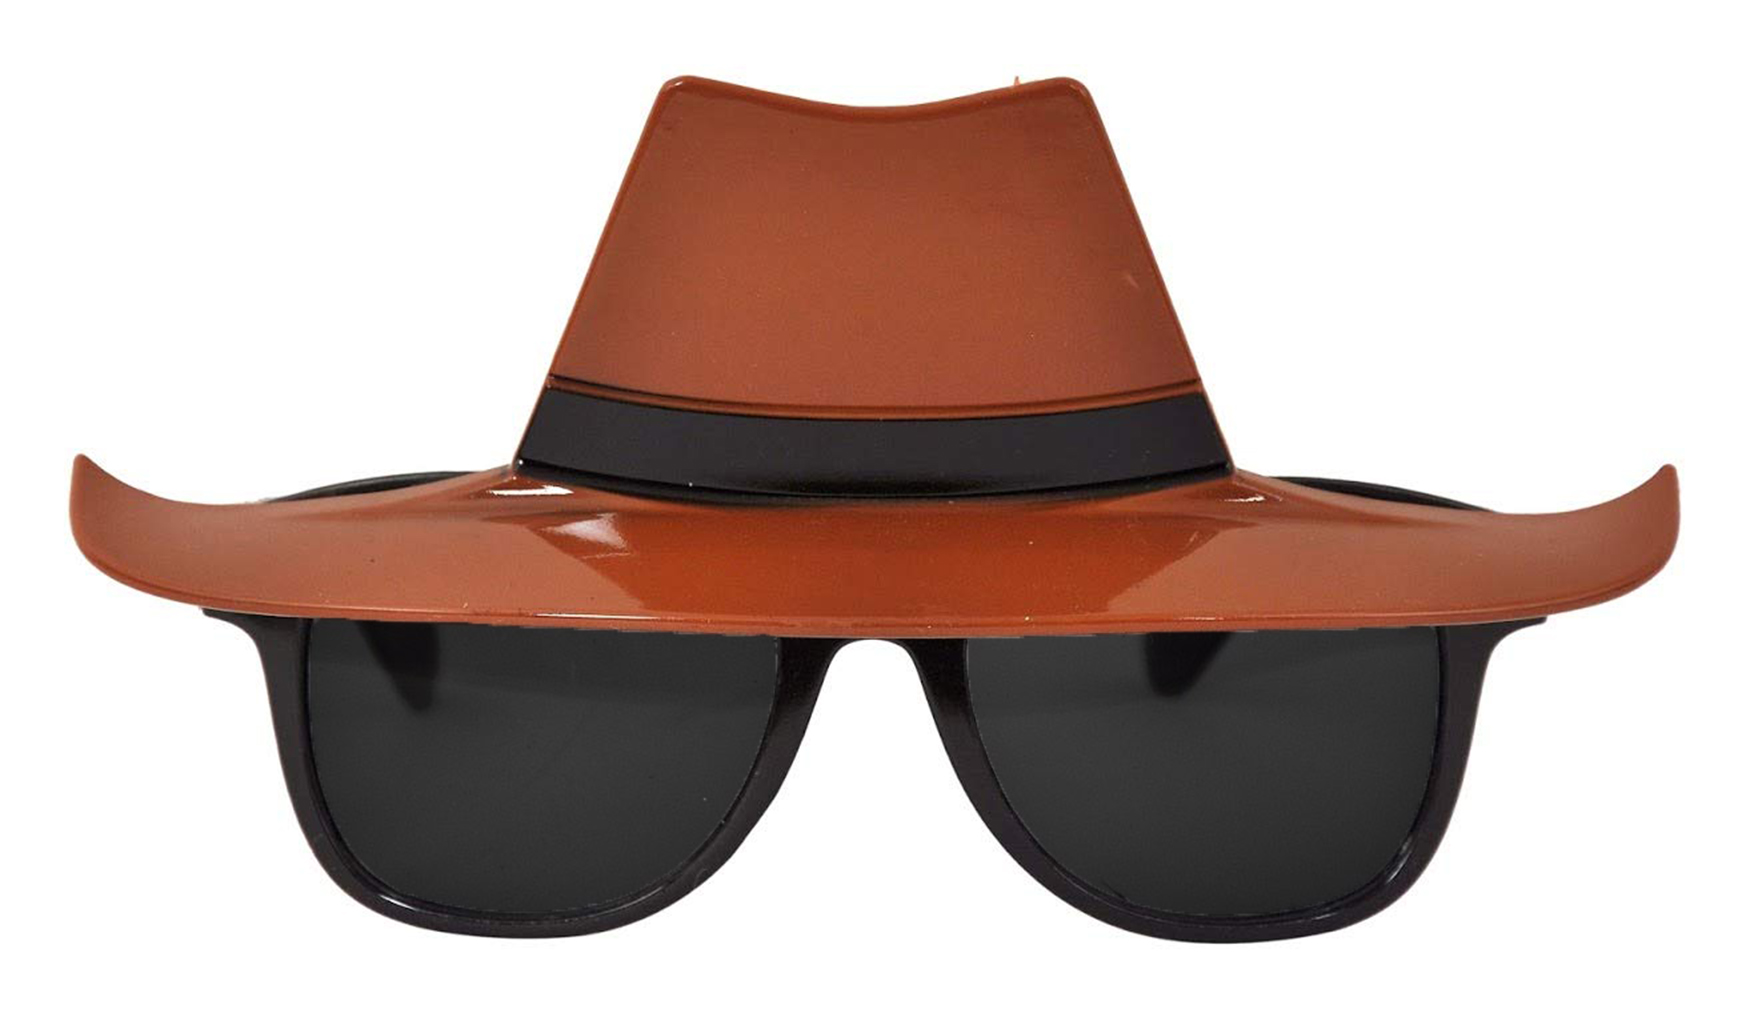 Dedektif Parti Gözlüğü - Kovboy Şerif Parti Gözlüğü 16x6 cm (CLZ)